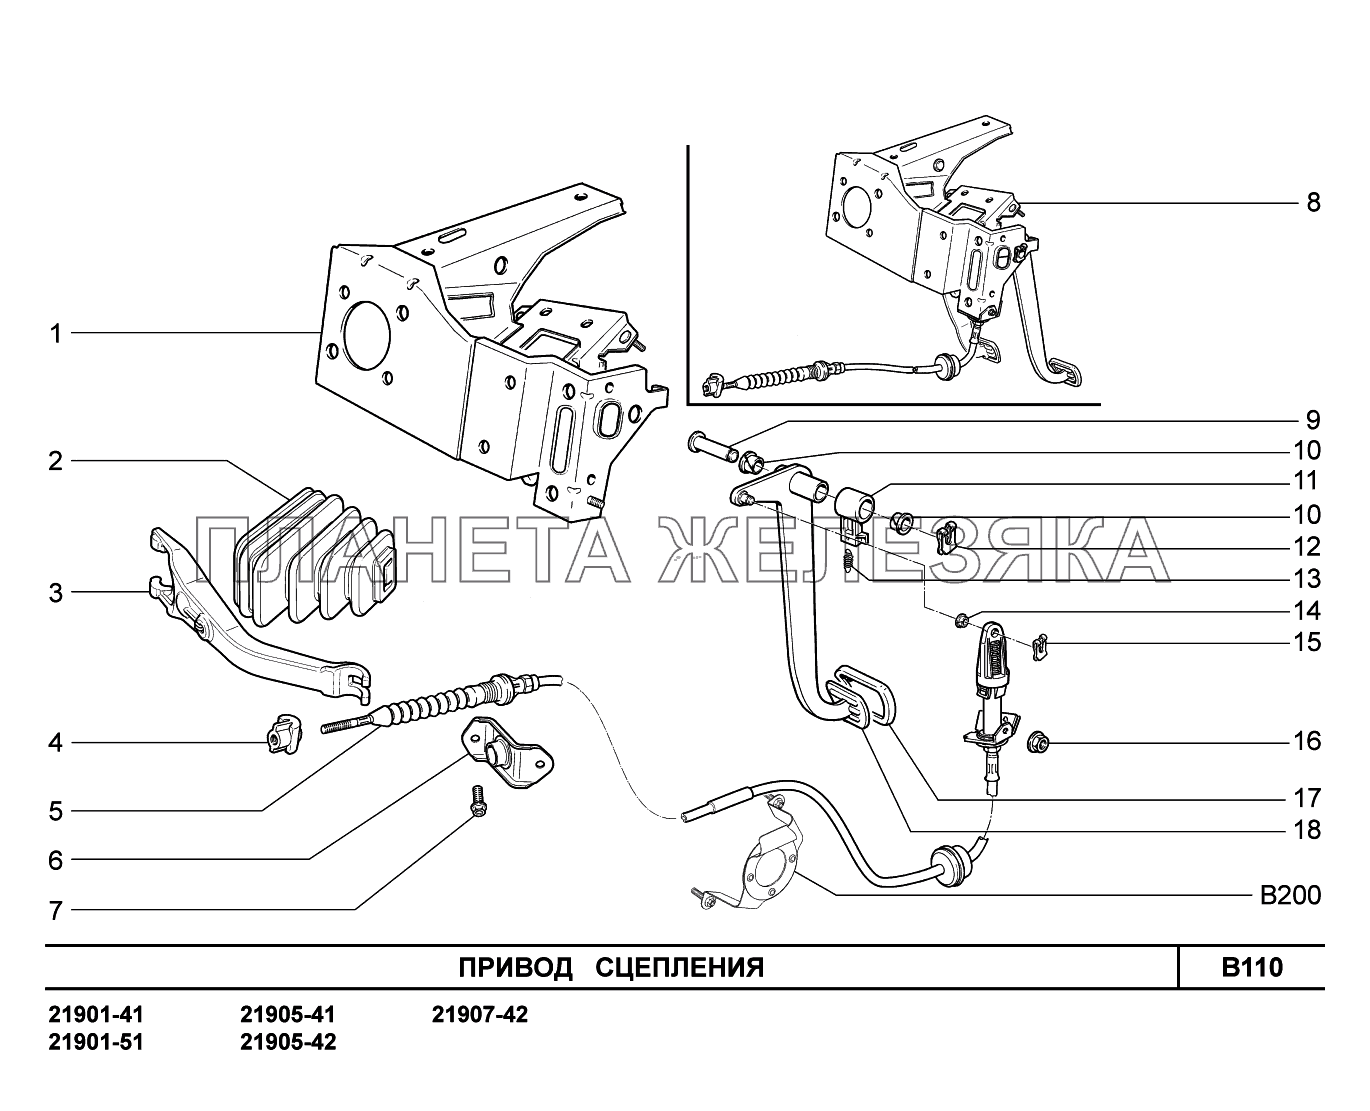 B110. Привод сцепления Lada Granta-2190